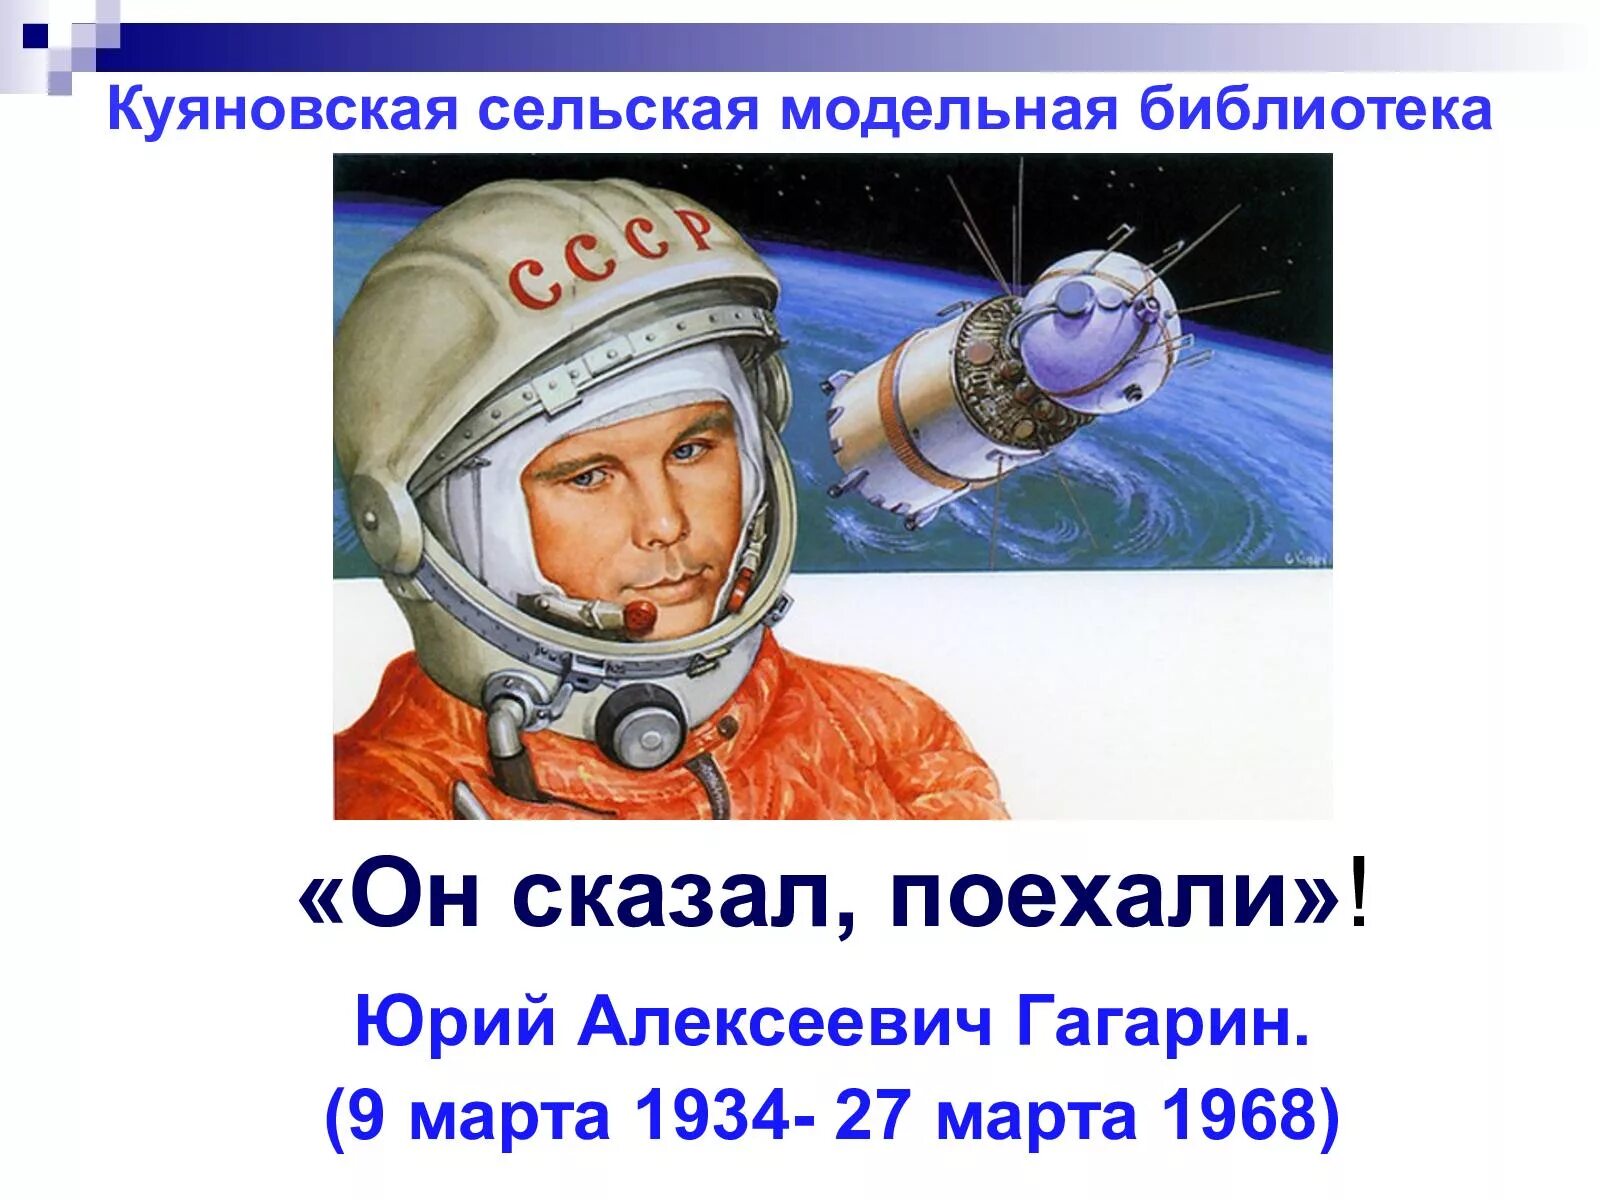 Гагарин сказал поехали и махнул. Он сказал поехали. Гагарин сказал поехали. День космонавтики.